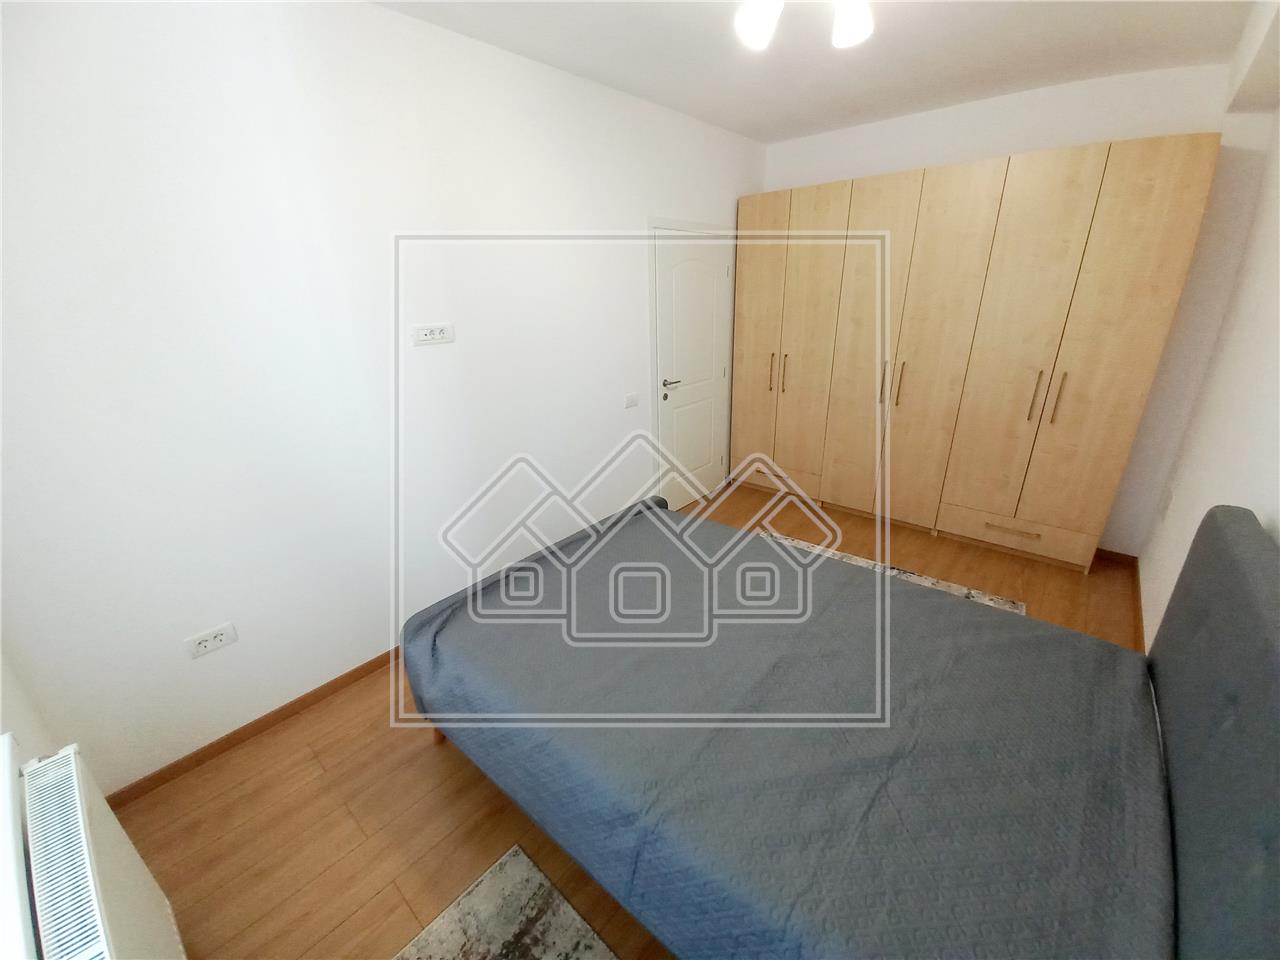 Apartment for rent in Alba Iulia - 3 rooms - new building - parking sp